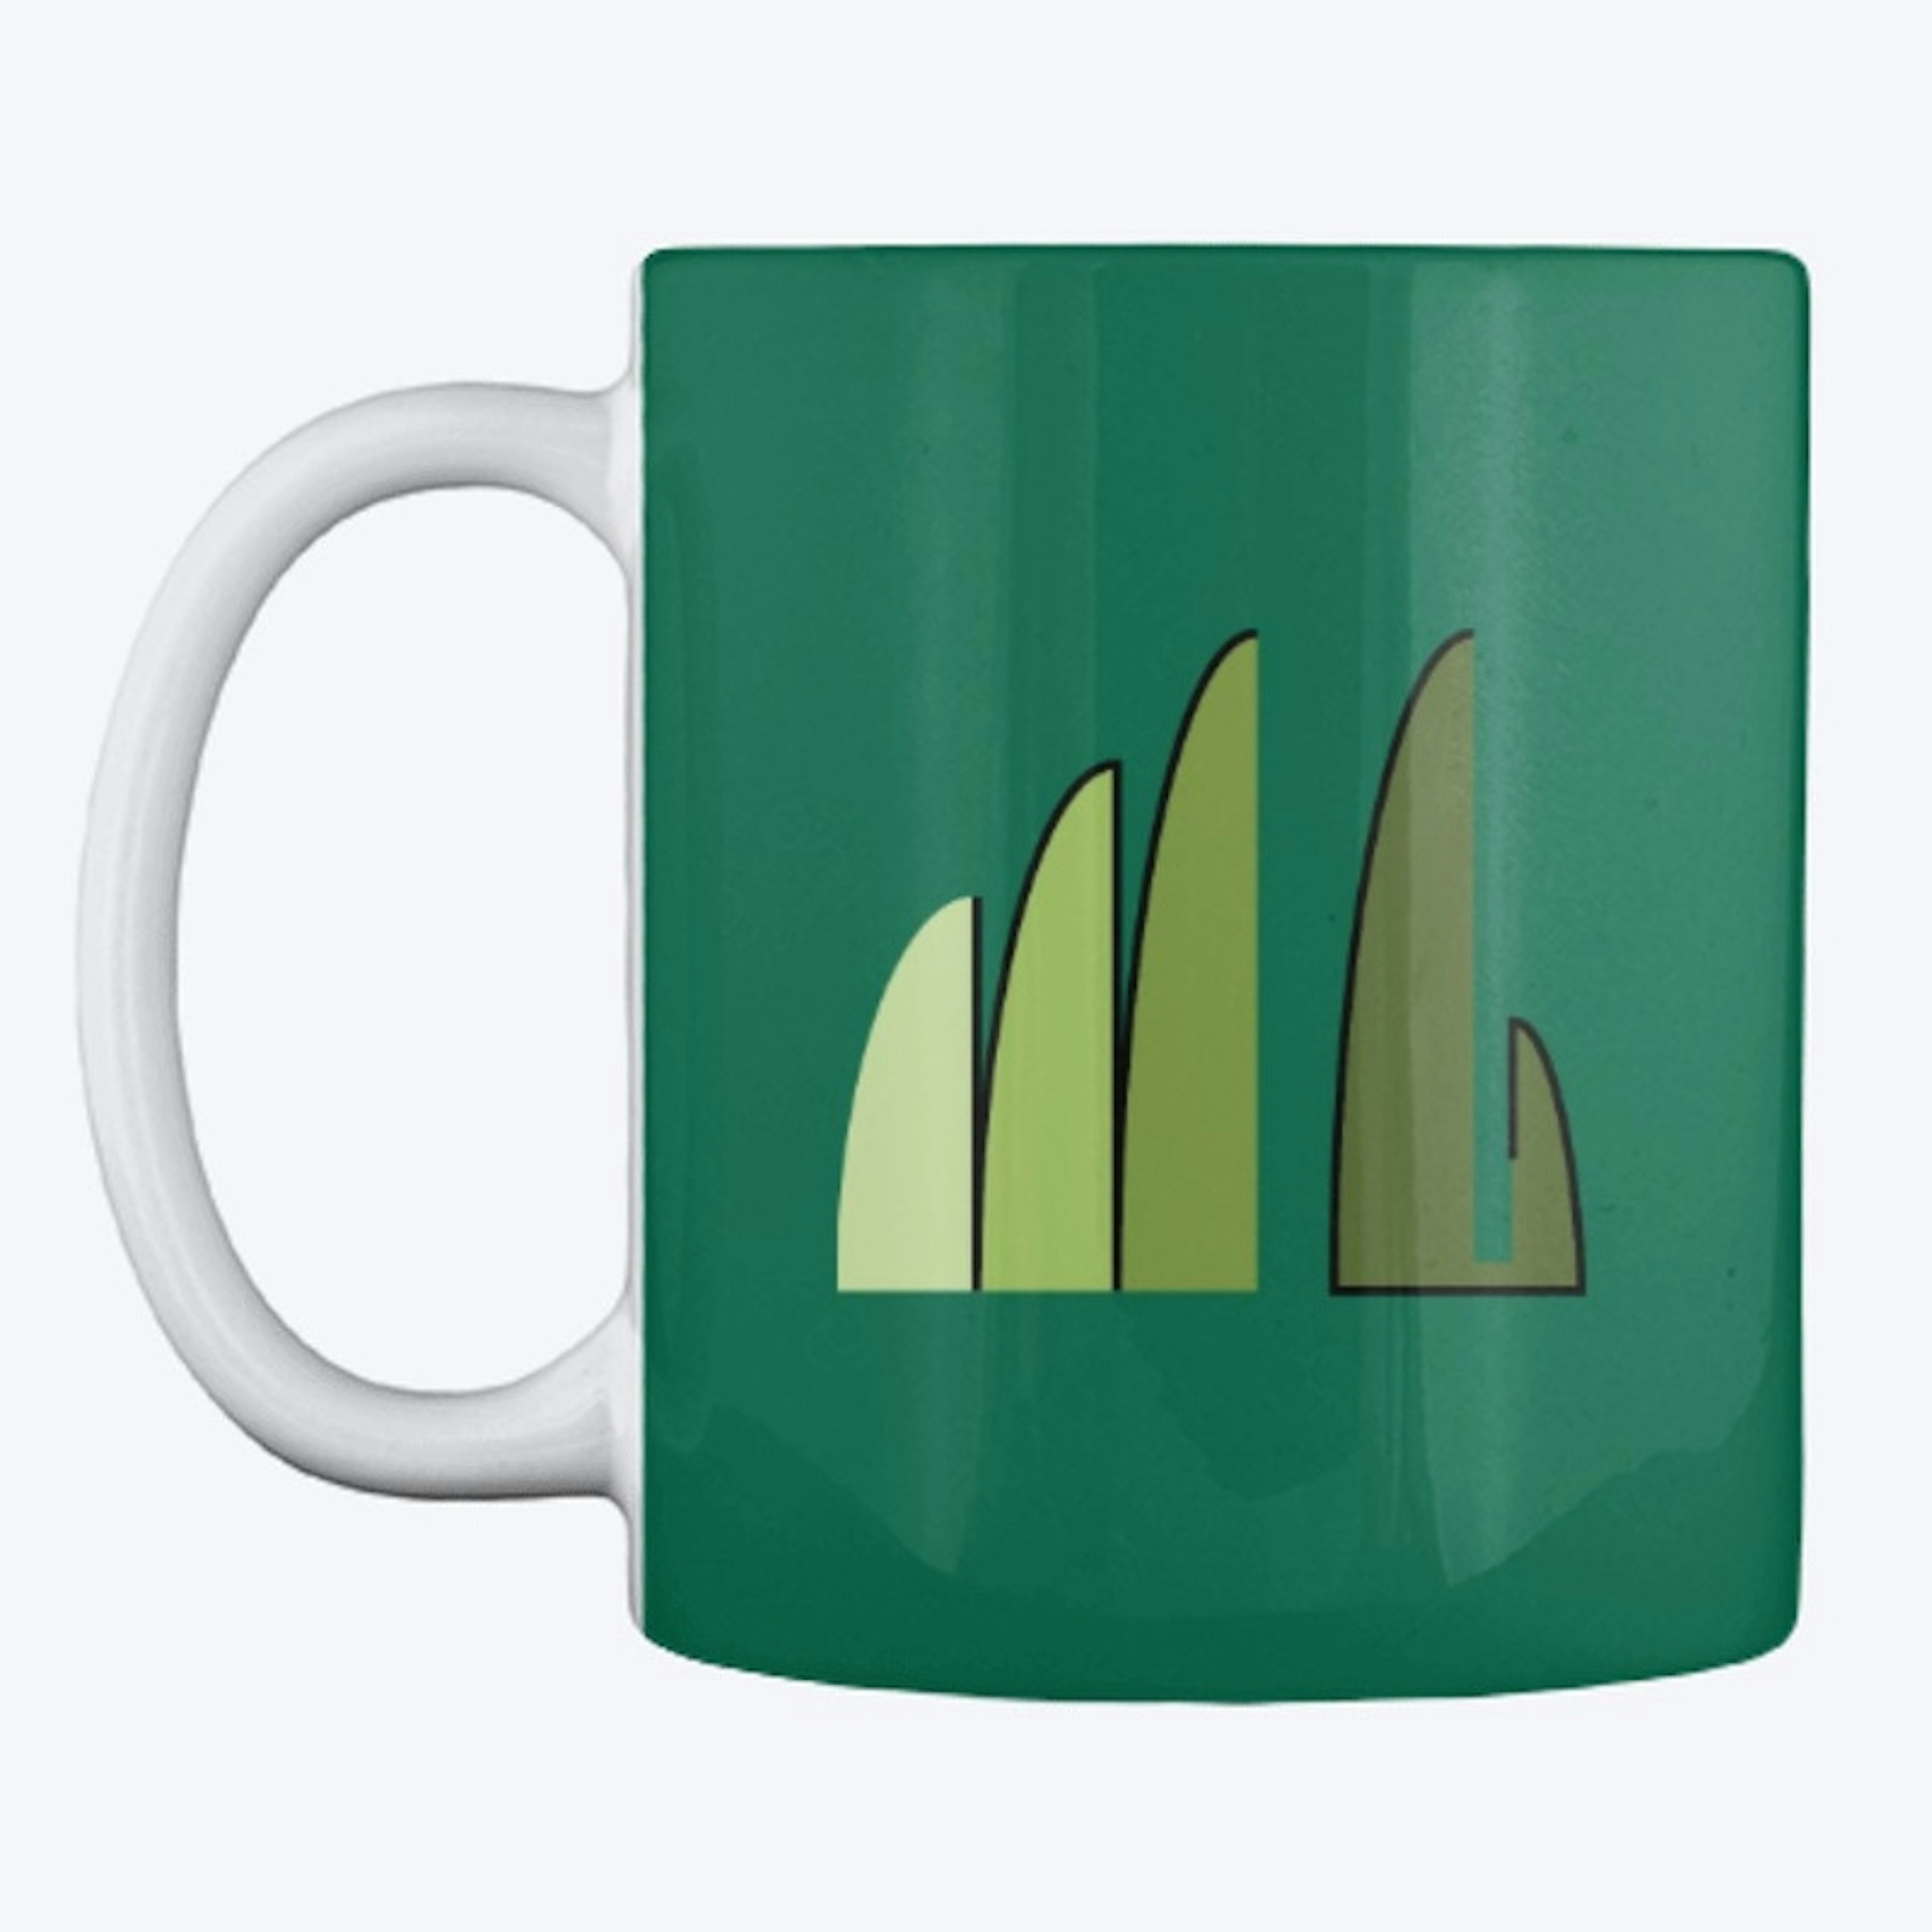 Morning Green Up Mug